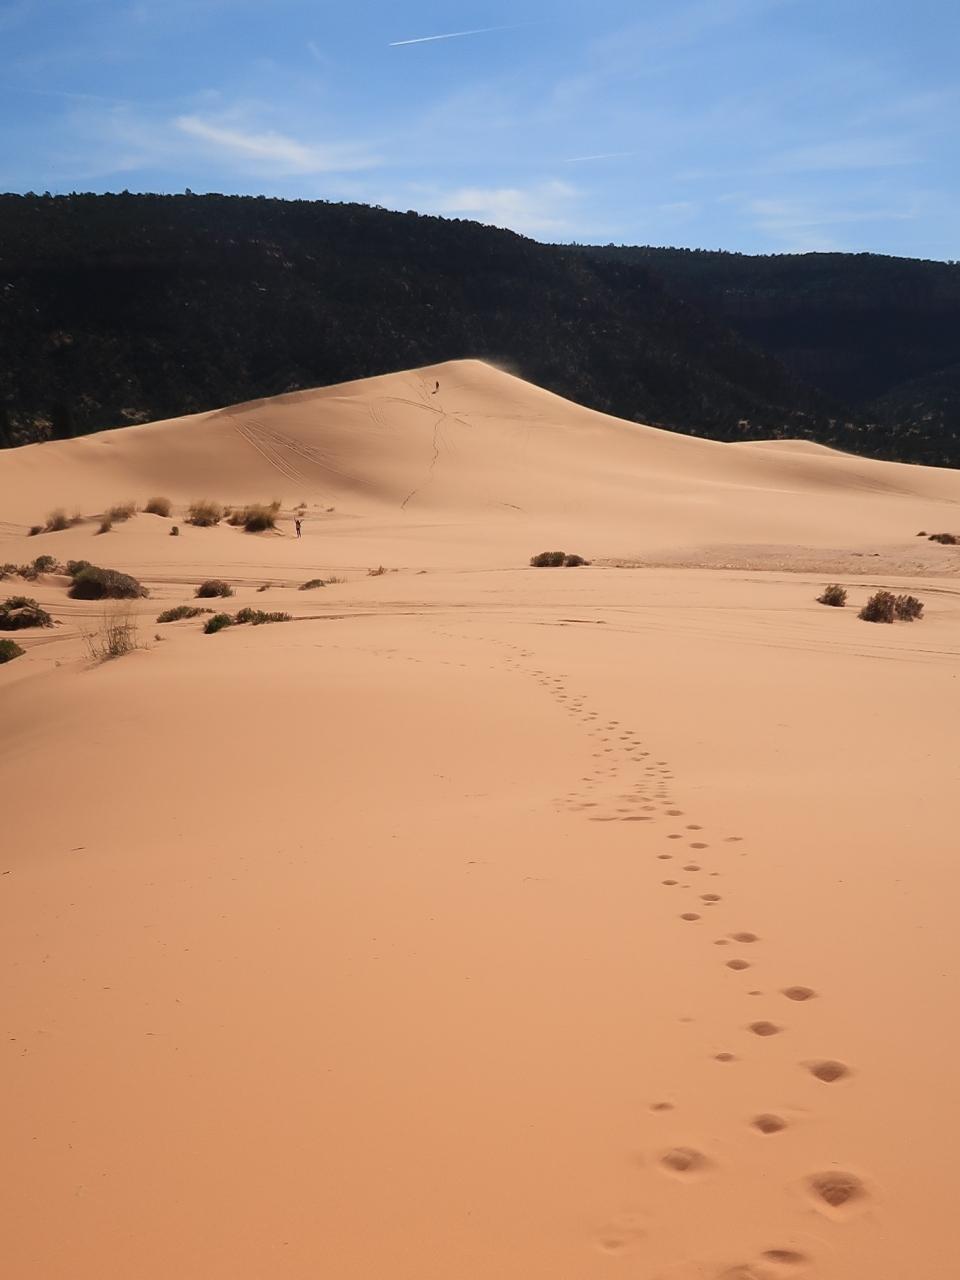 アメリカ西部17 コーラルピンクサンドデューンズ探訪 砂漠地帯の砂丘を歩く ブライスキャニオン国立公園周辺 アメリカ の旅行記 ブログ By マキタンさん フォートラベル